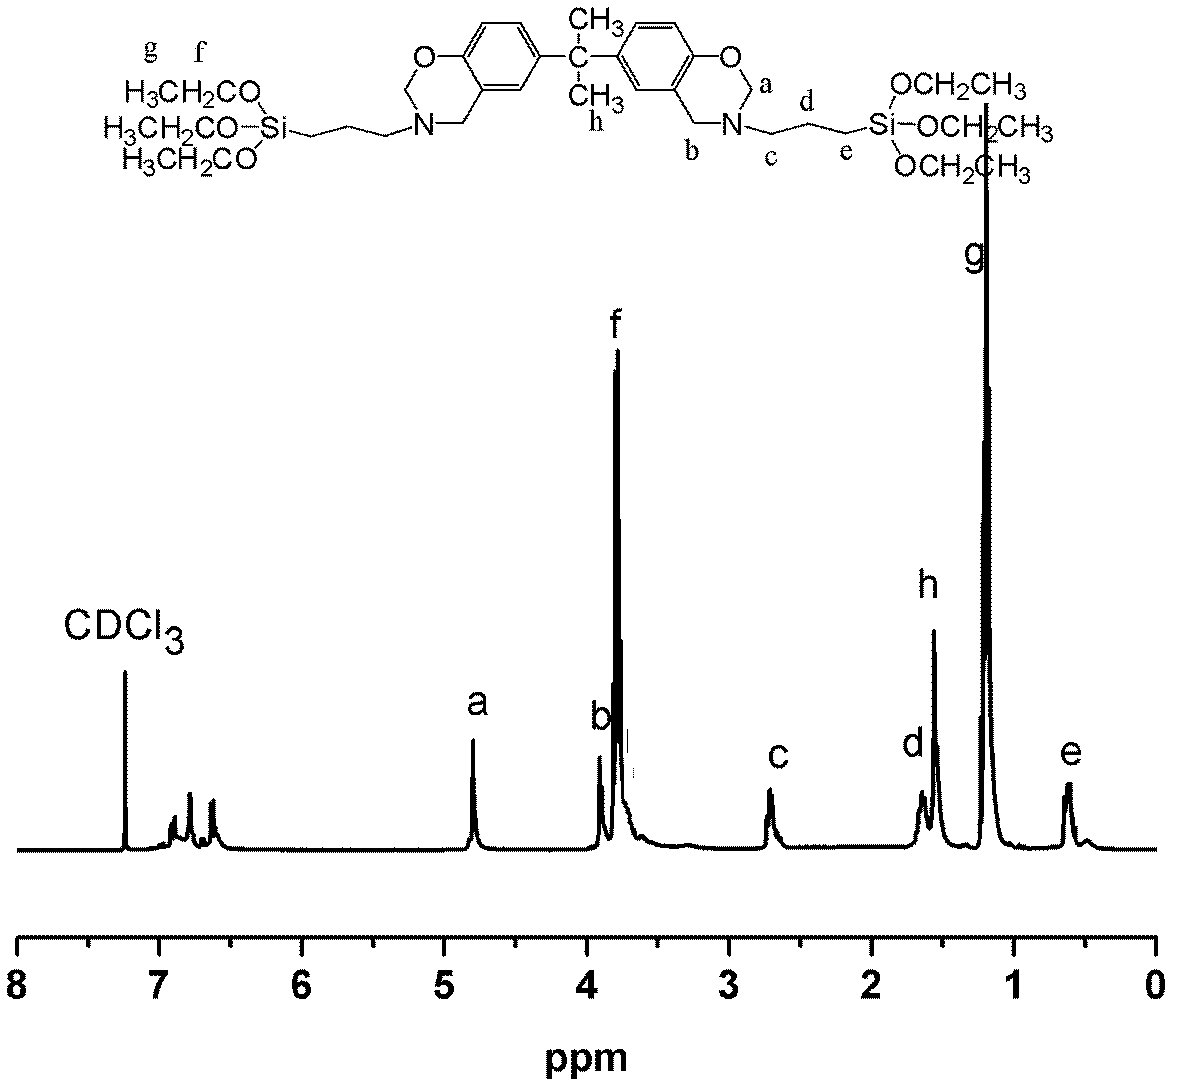 Benzoxazine monomer, benzoxazine precursor and low-dielectric benzoxazine resin